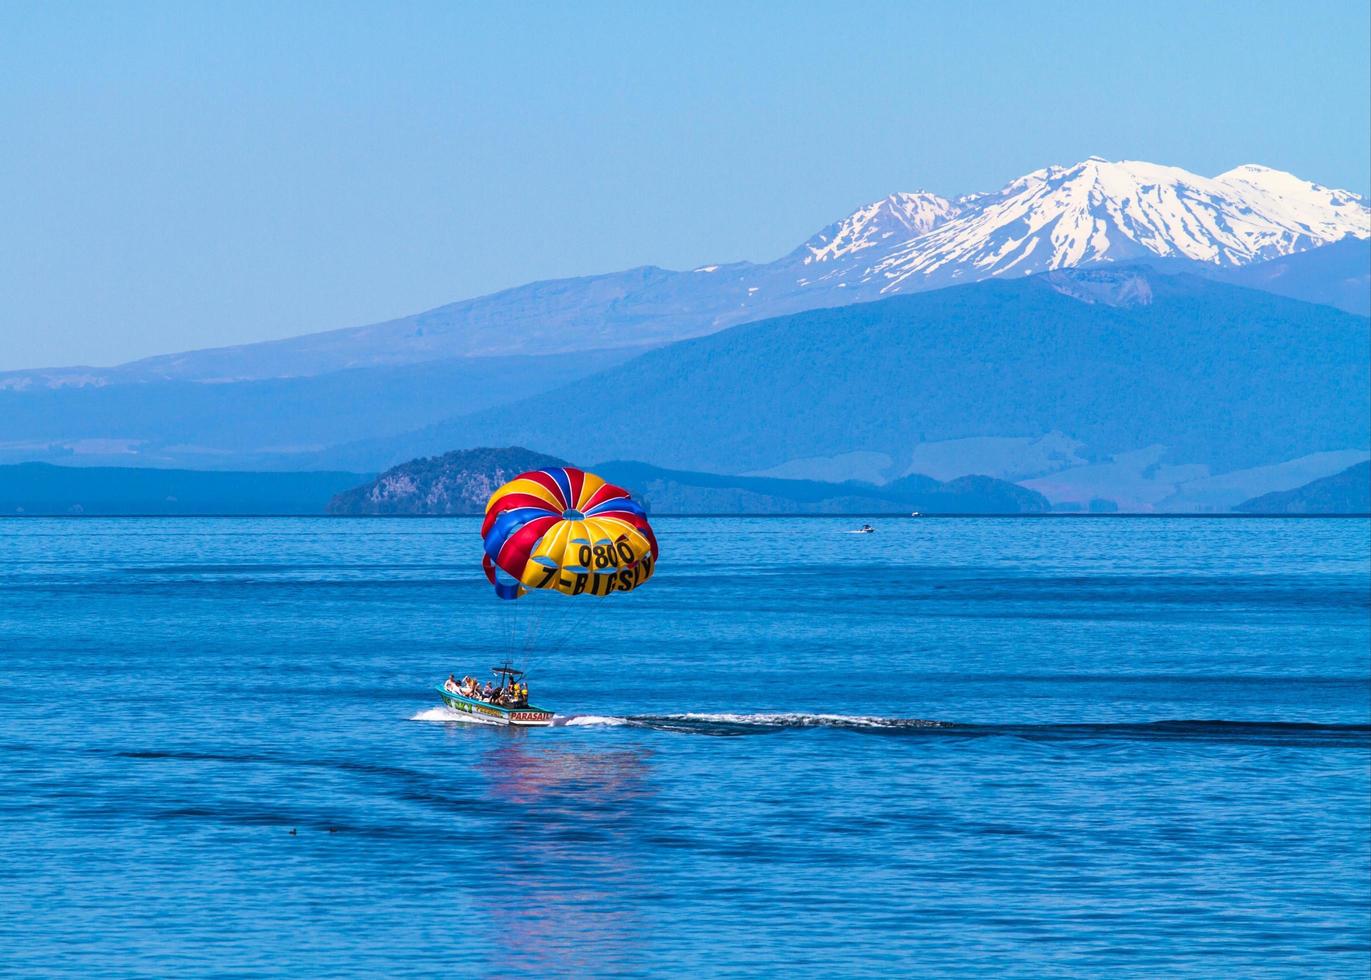 Lake Taupo, Nouvelle-Zélande, 2020 - Un groupe de parachute ascensionnel à cheval sur un bateau près des montagnes photo